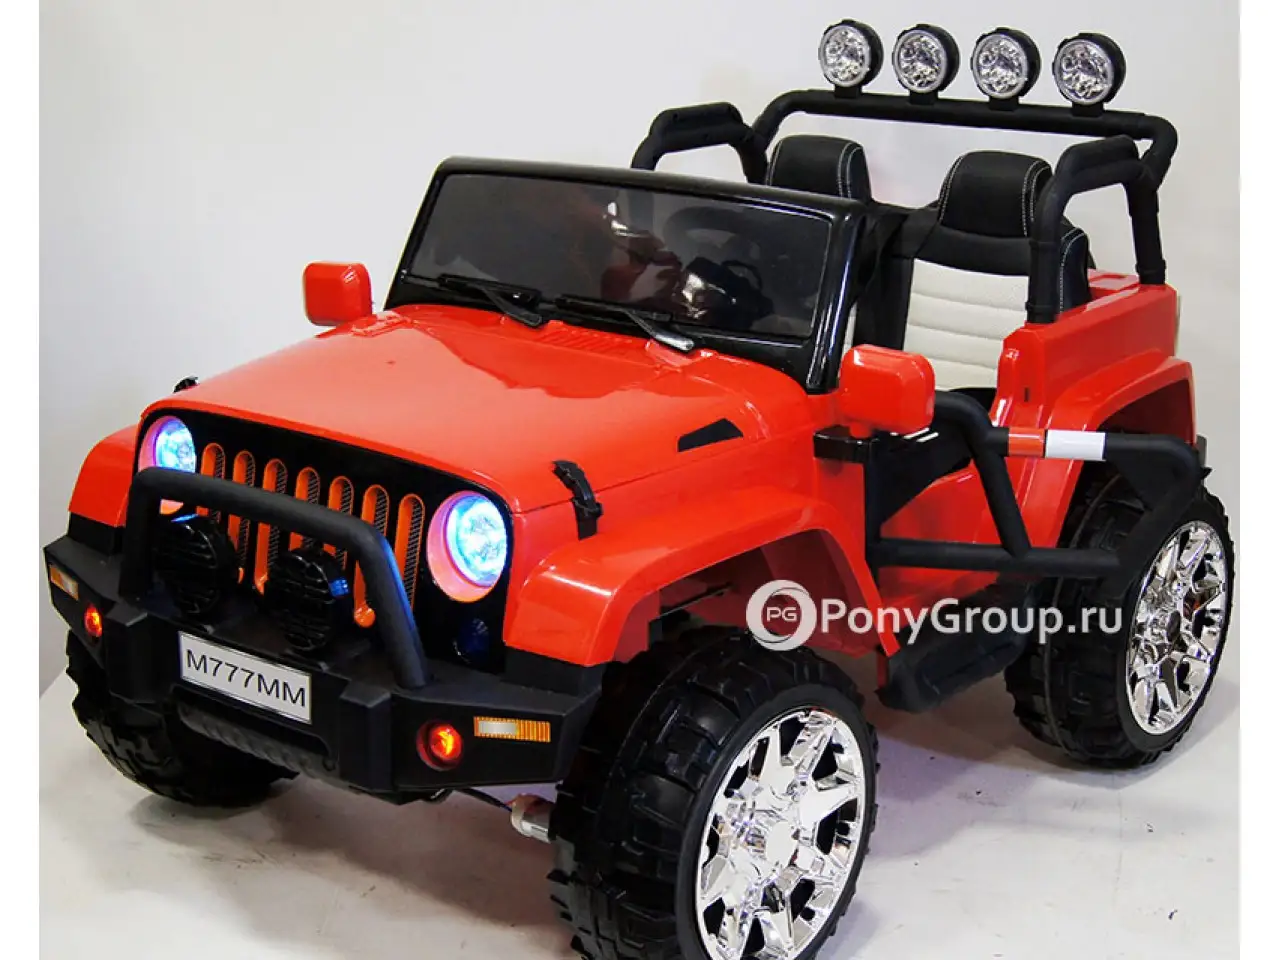 Двухместные электромобили купить. RIVERTOYS автомобиль Jeep m777mm. Детский электромобиль Jeep a004aa. Детский электромобиль джип Вранглер 4х4. Электромобиль Jeep Wrangler Red 4wd.